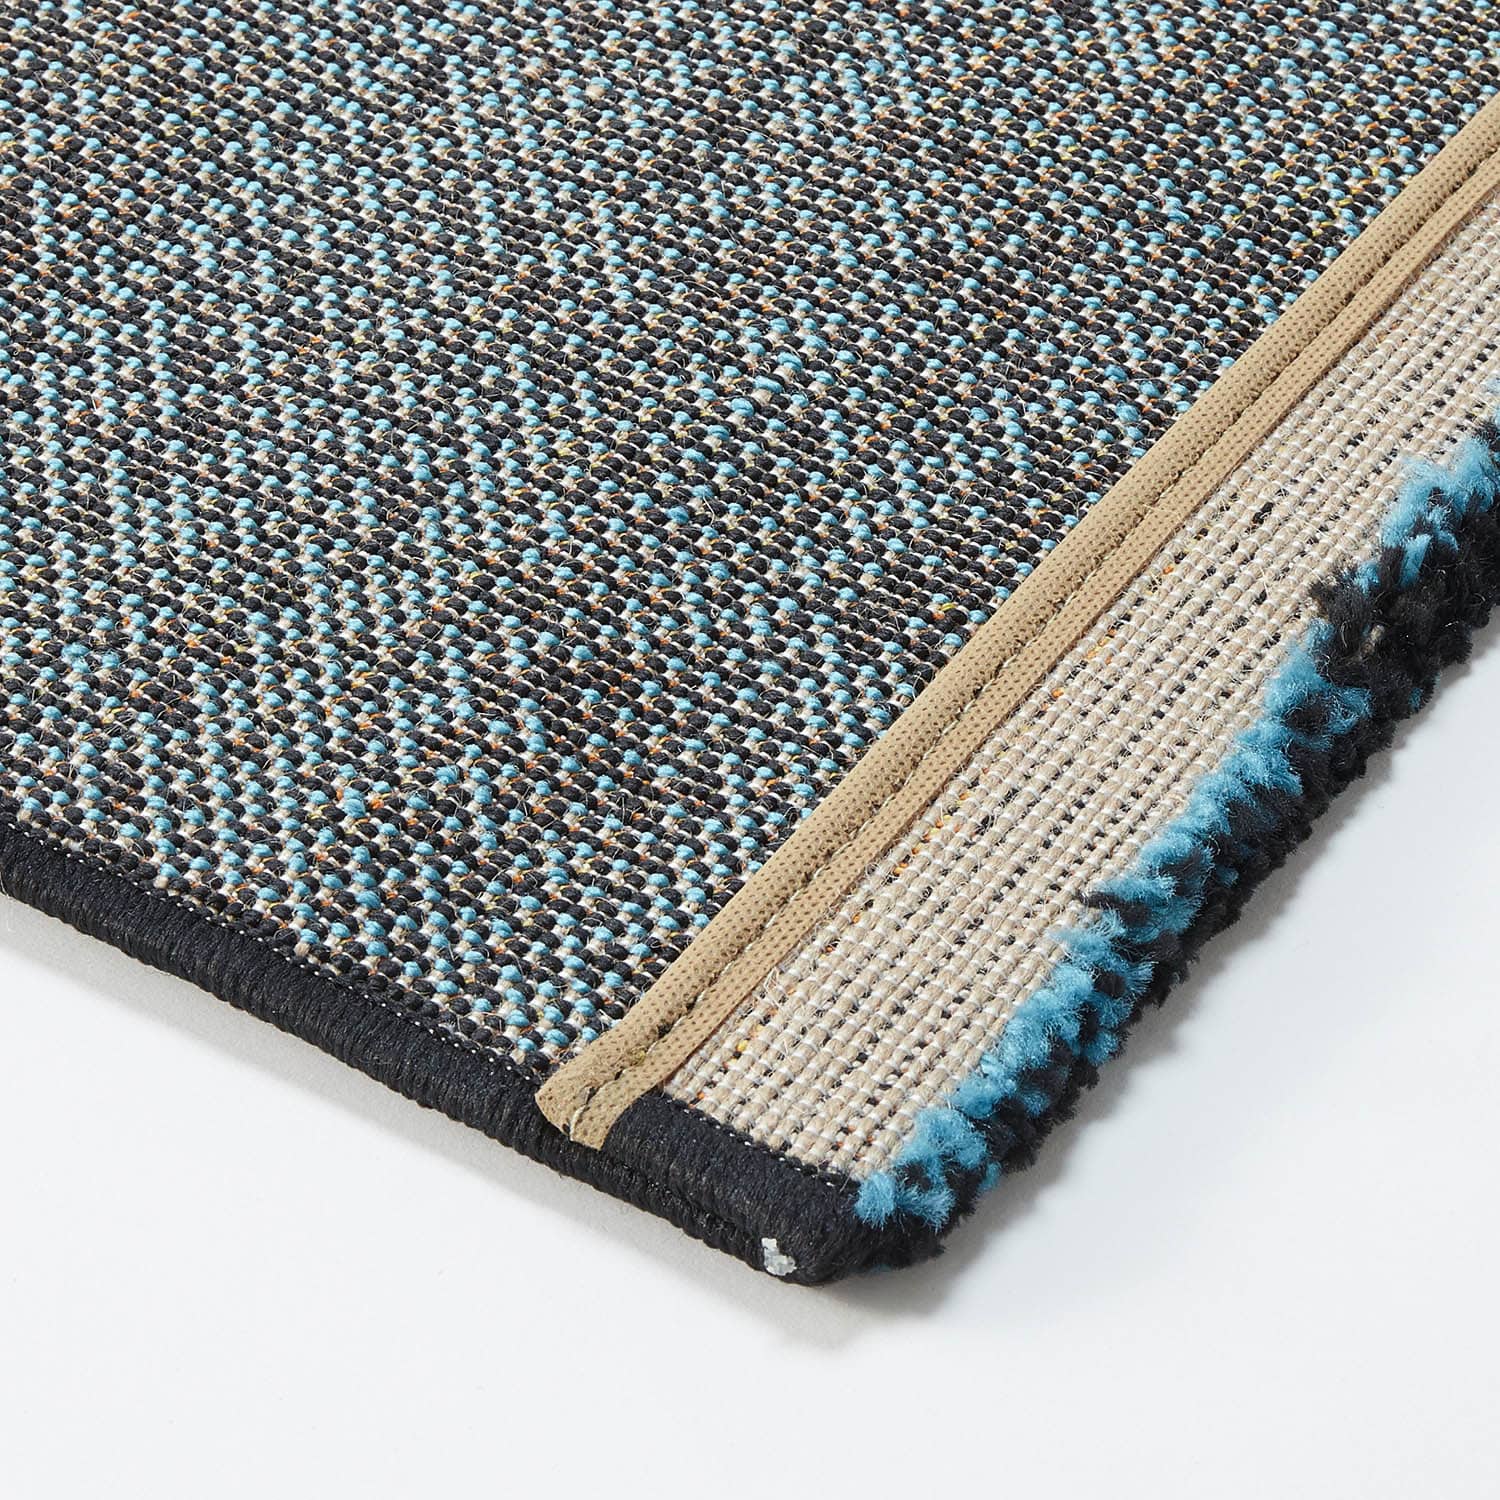 ベルメゾン トルコ製パッチワーク風デザインのウィルトン織りラグ